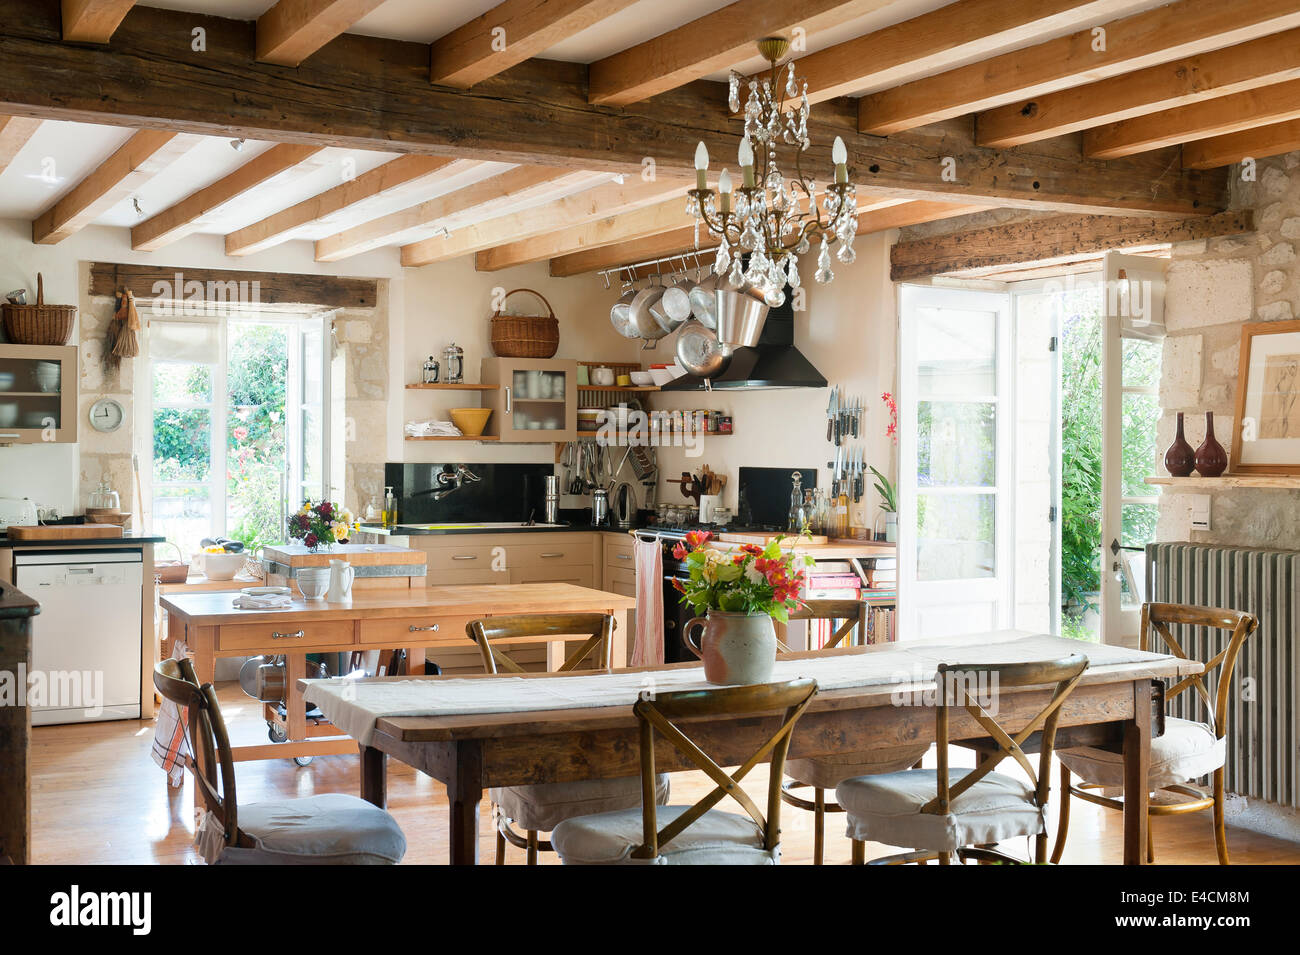 Rustikale Küche mit französischer Esstisch aus Holz, decken-Balken, Glas-Kronleuchter und traditionellen Camargue-Stil Speisen Stockfoto